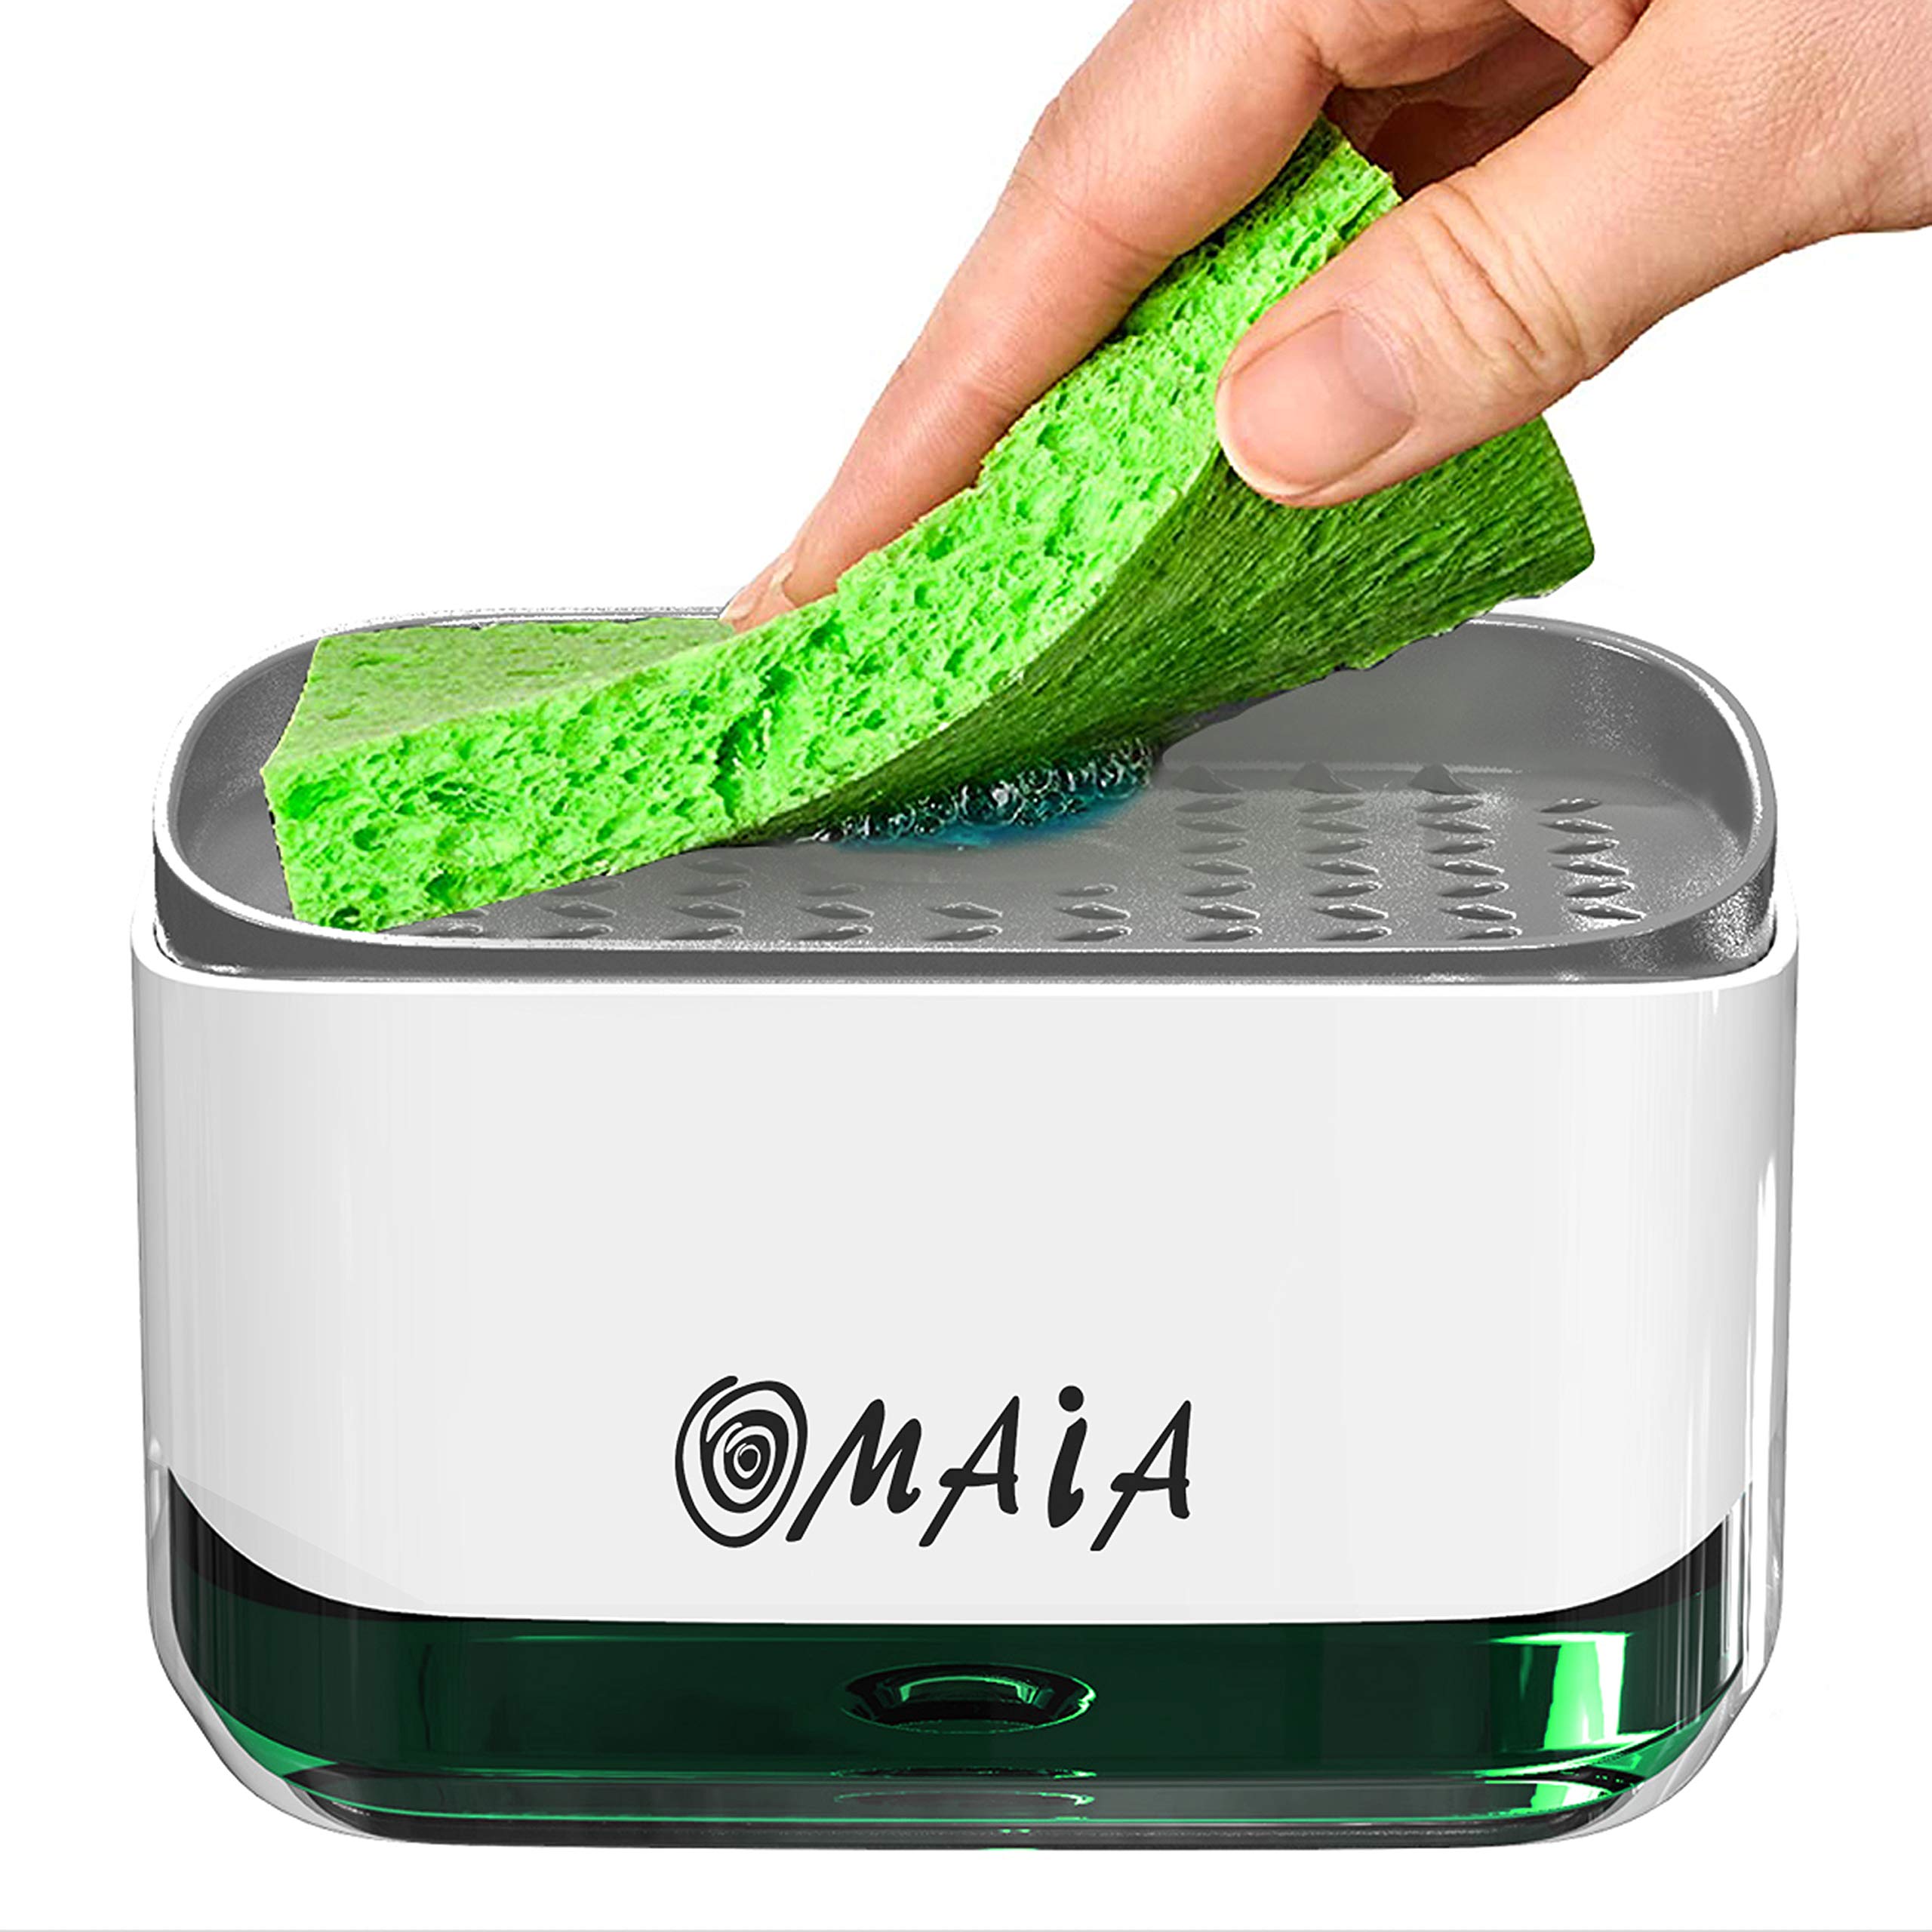 OMAIA Soap Dispenser with Sponge Holder